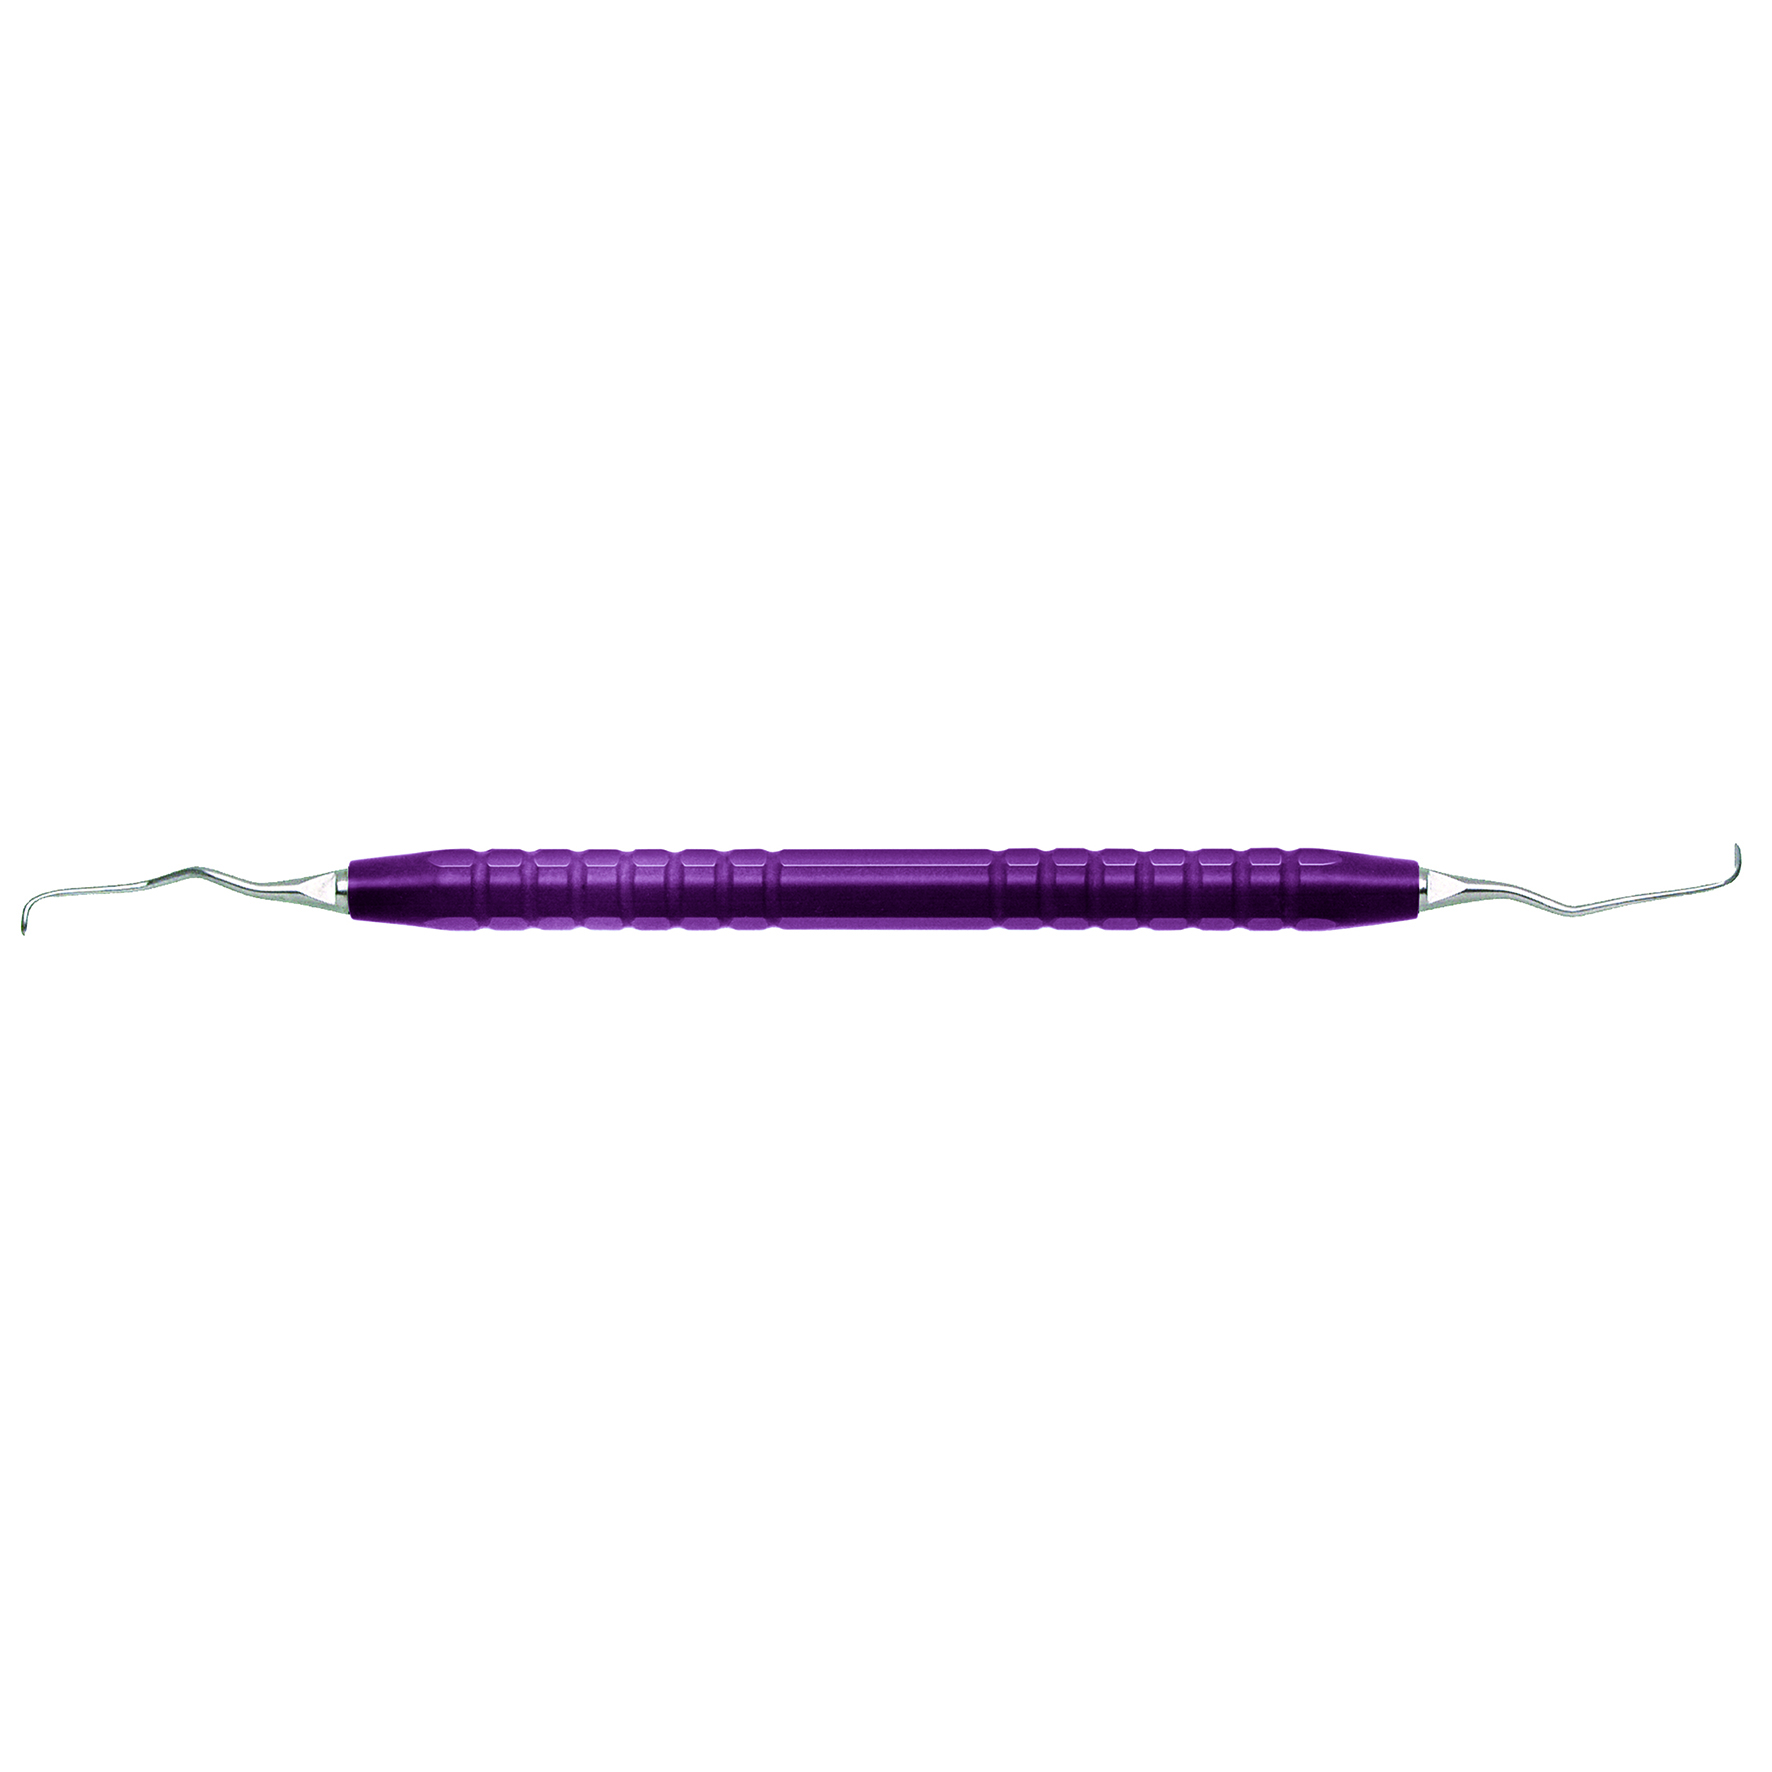 グレーシーキュレット GRXST11-12 φ8mm (紫) チタン